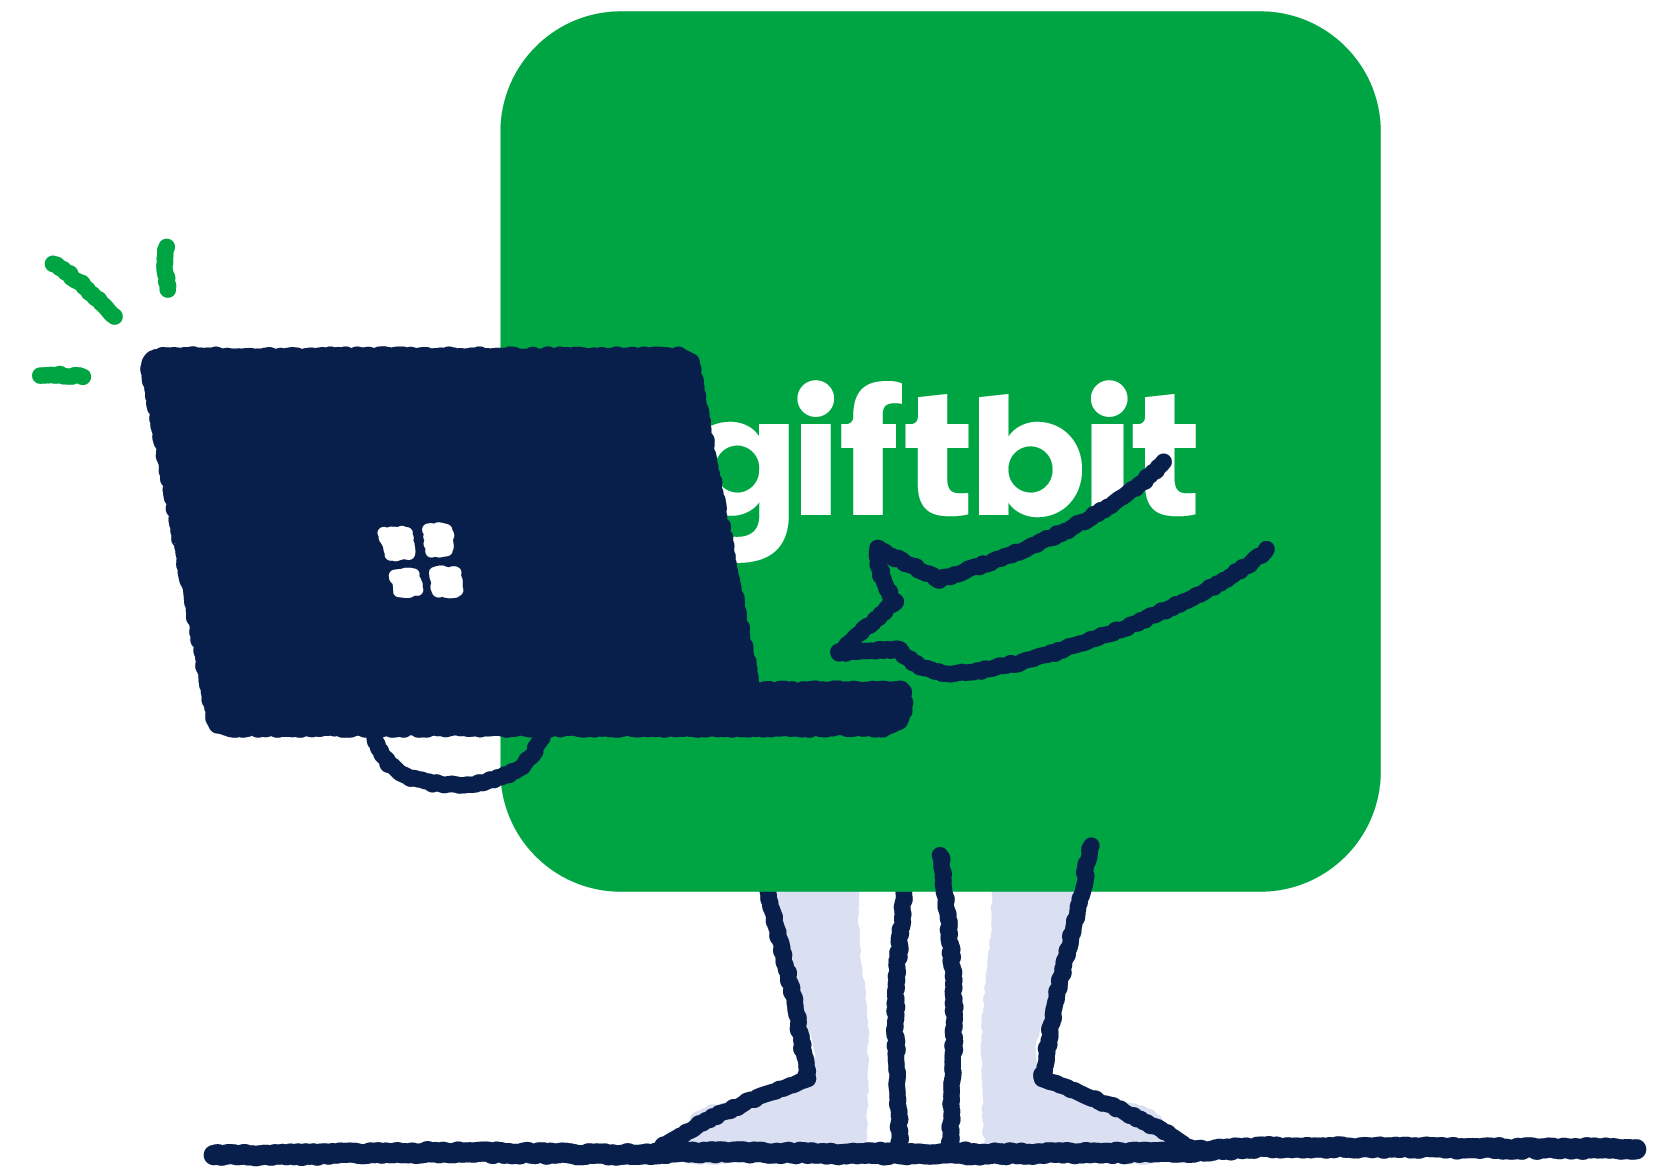 Giftbit gift card API